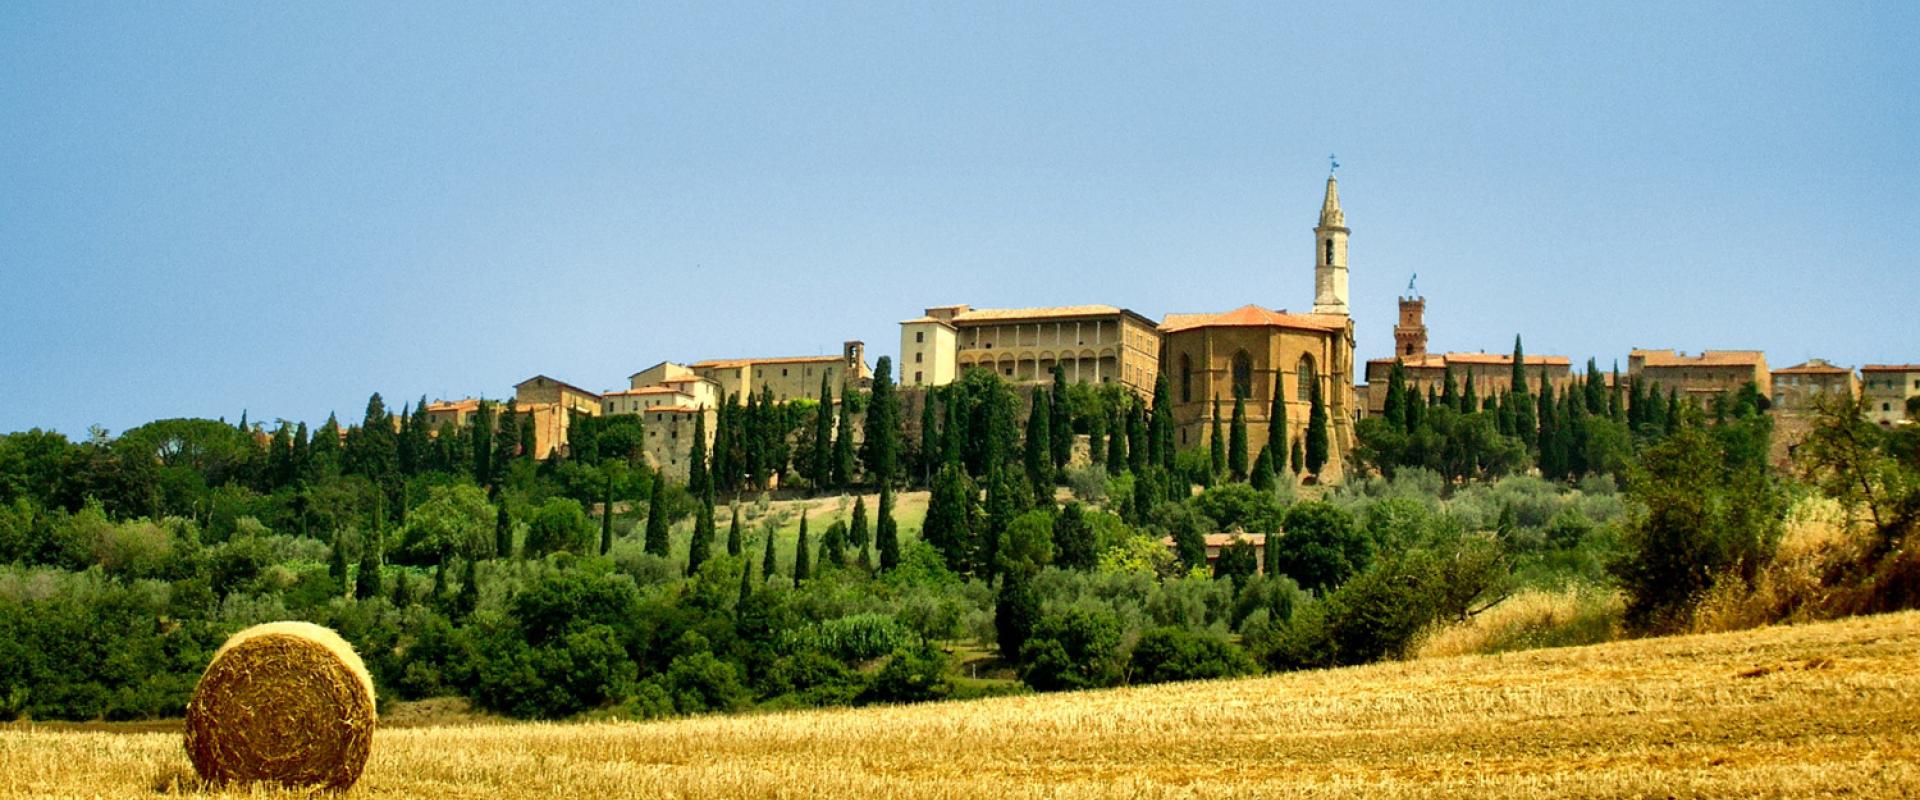 Montalcino Tuscany